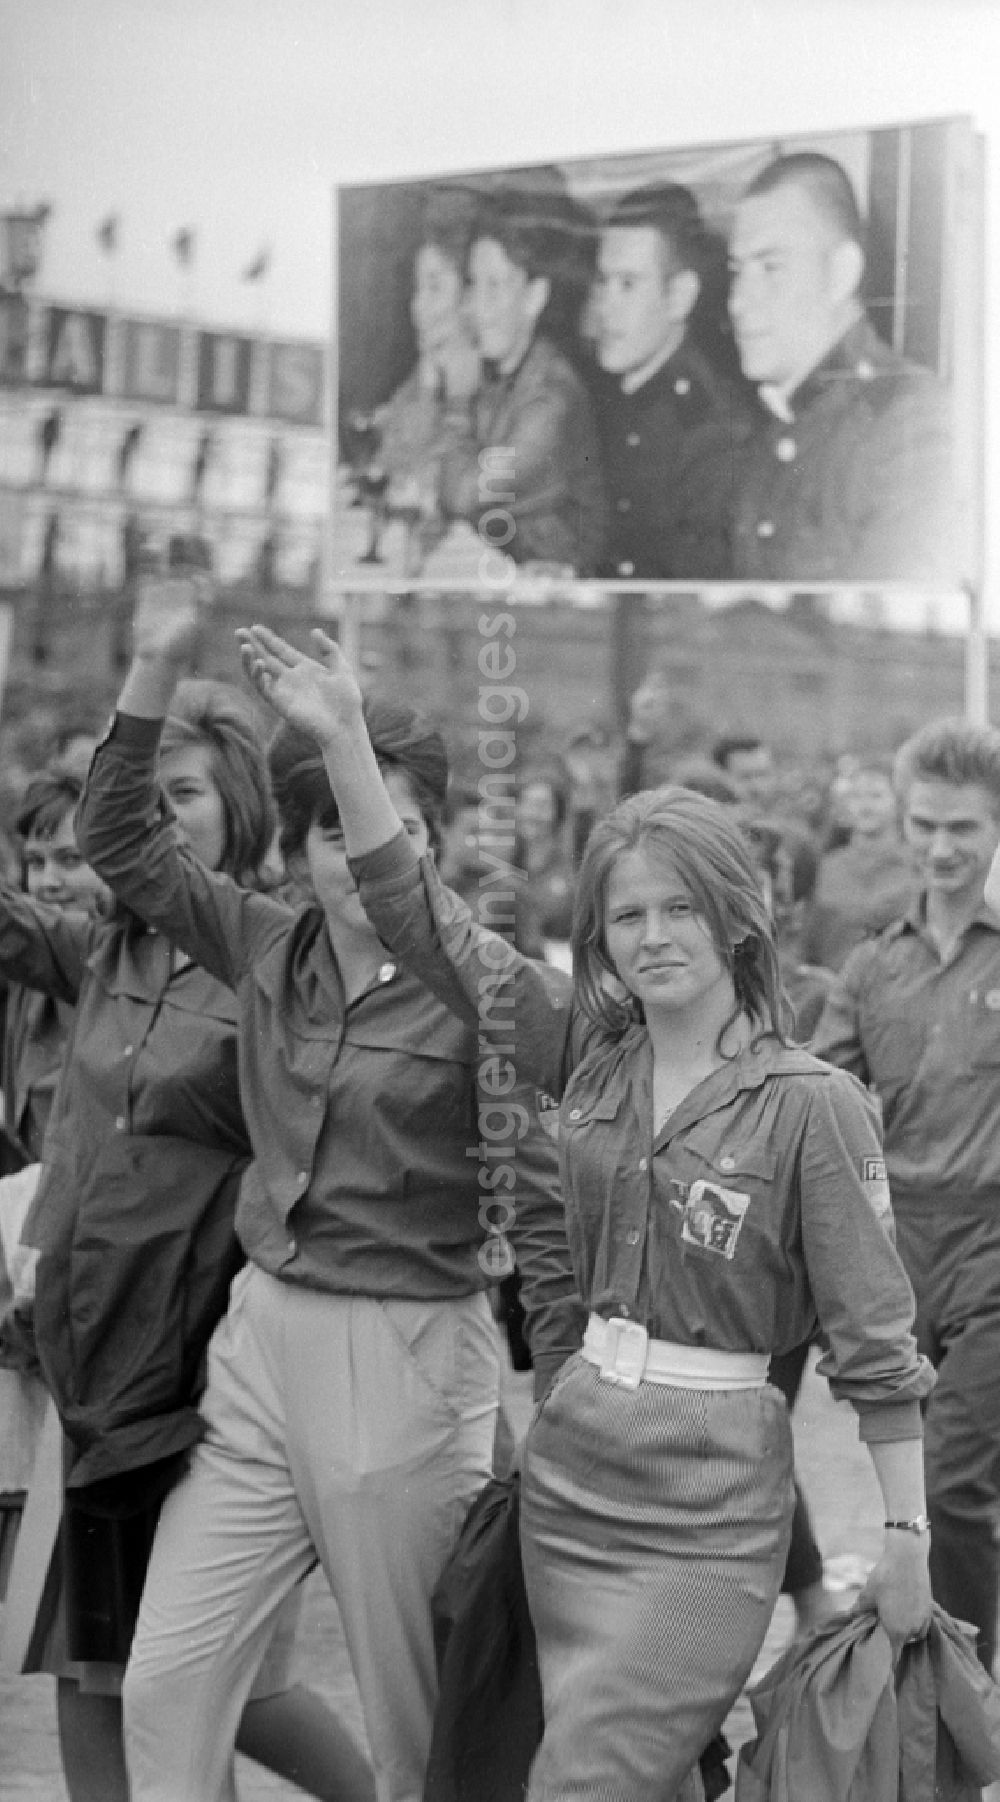 GDR image archive: Berlin - Zu Pfingsten 1964, vom 16.-18. Mai, findet in Berlin das letzte Deutschlandtreffen der Jugend für Frieden und Völkerfreundschaft statt. Hier Teilnehmer einer Demonstration. Eine junge Frau / Mädchen mit FDJ-Hemd und zwei andere Mitstreiterinnen hebt den Arm zum Gruß. Im Hintergrund eine Bild-tafel / Transparent mit dem Gesichtern sozialistischer Prominenter. Ziel der ersten Veranstaltung im Mai 1950 war, die kommunistische Jugend in Ost und West mobil zu machen und der damals in der BRD noch zugelassenen FDJ neue Anh?nger zuzuführen. 1951 wurde das Verbot gegen die FDJ in der BRD ausgesprochen. Nach 1964 entsprach eine gesamtdeutsche kommunistische Politik nicht mehr den Zielen der DDR-Regierung. In den 70er und 8